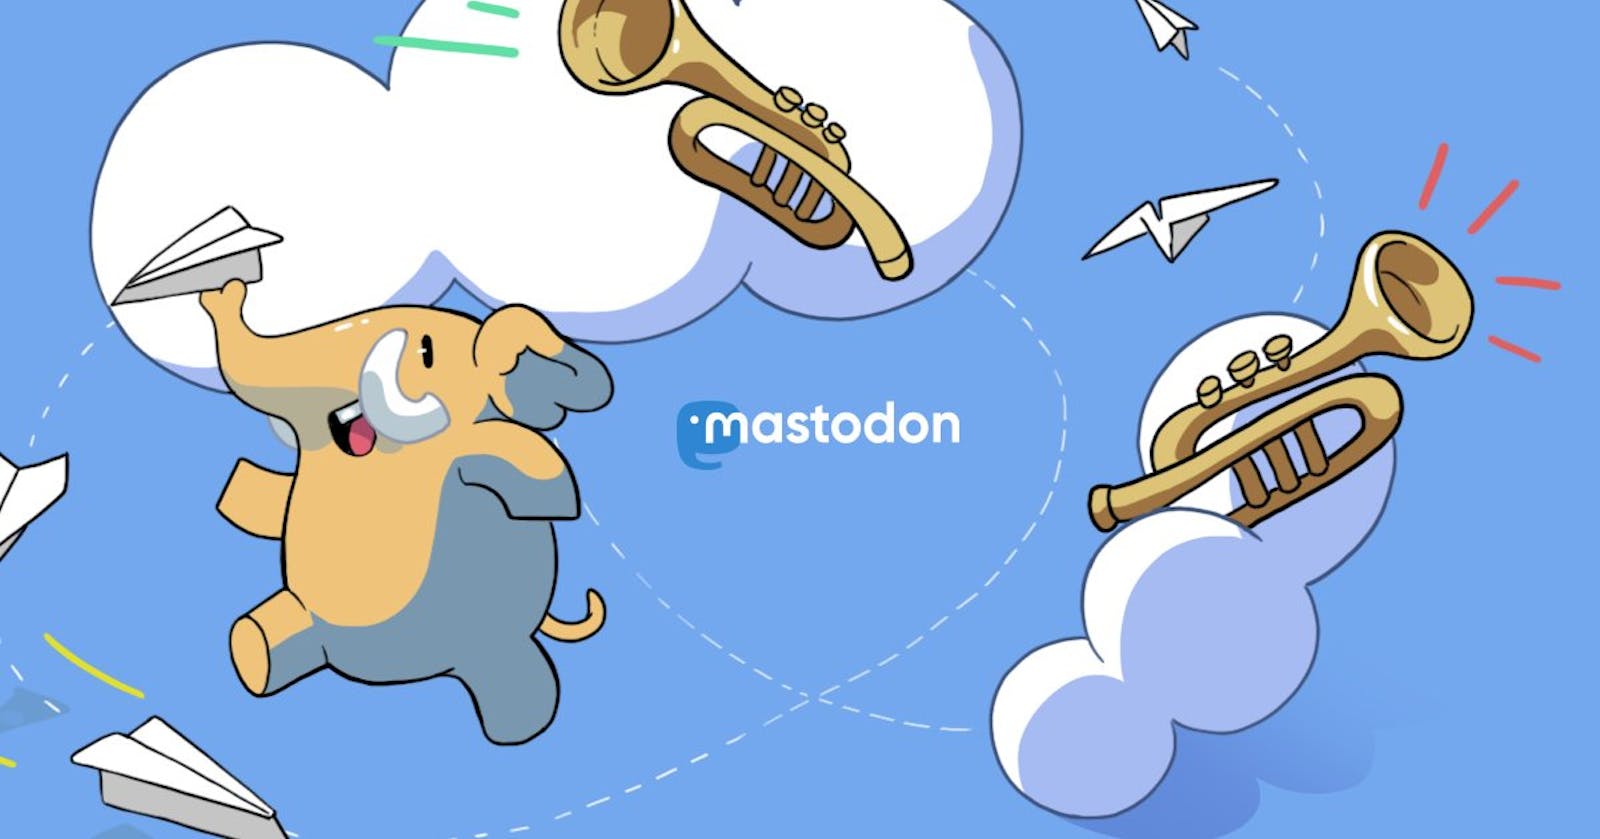 A migration to Mastodon